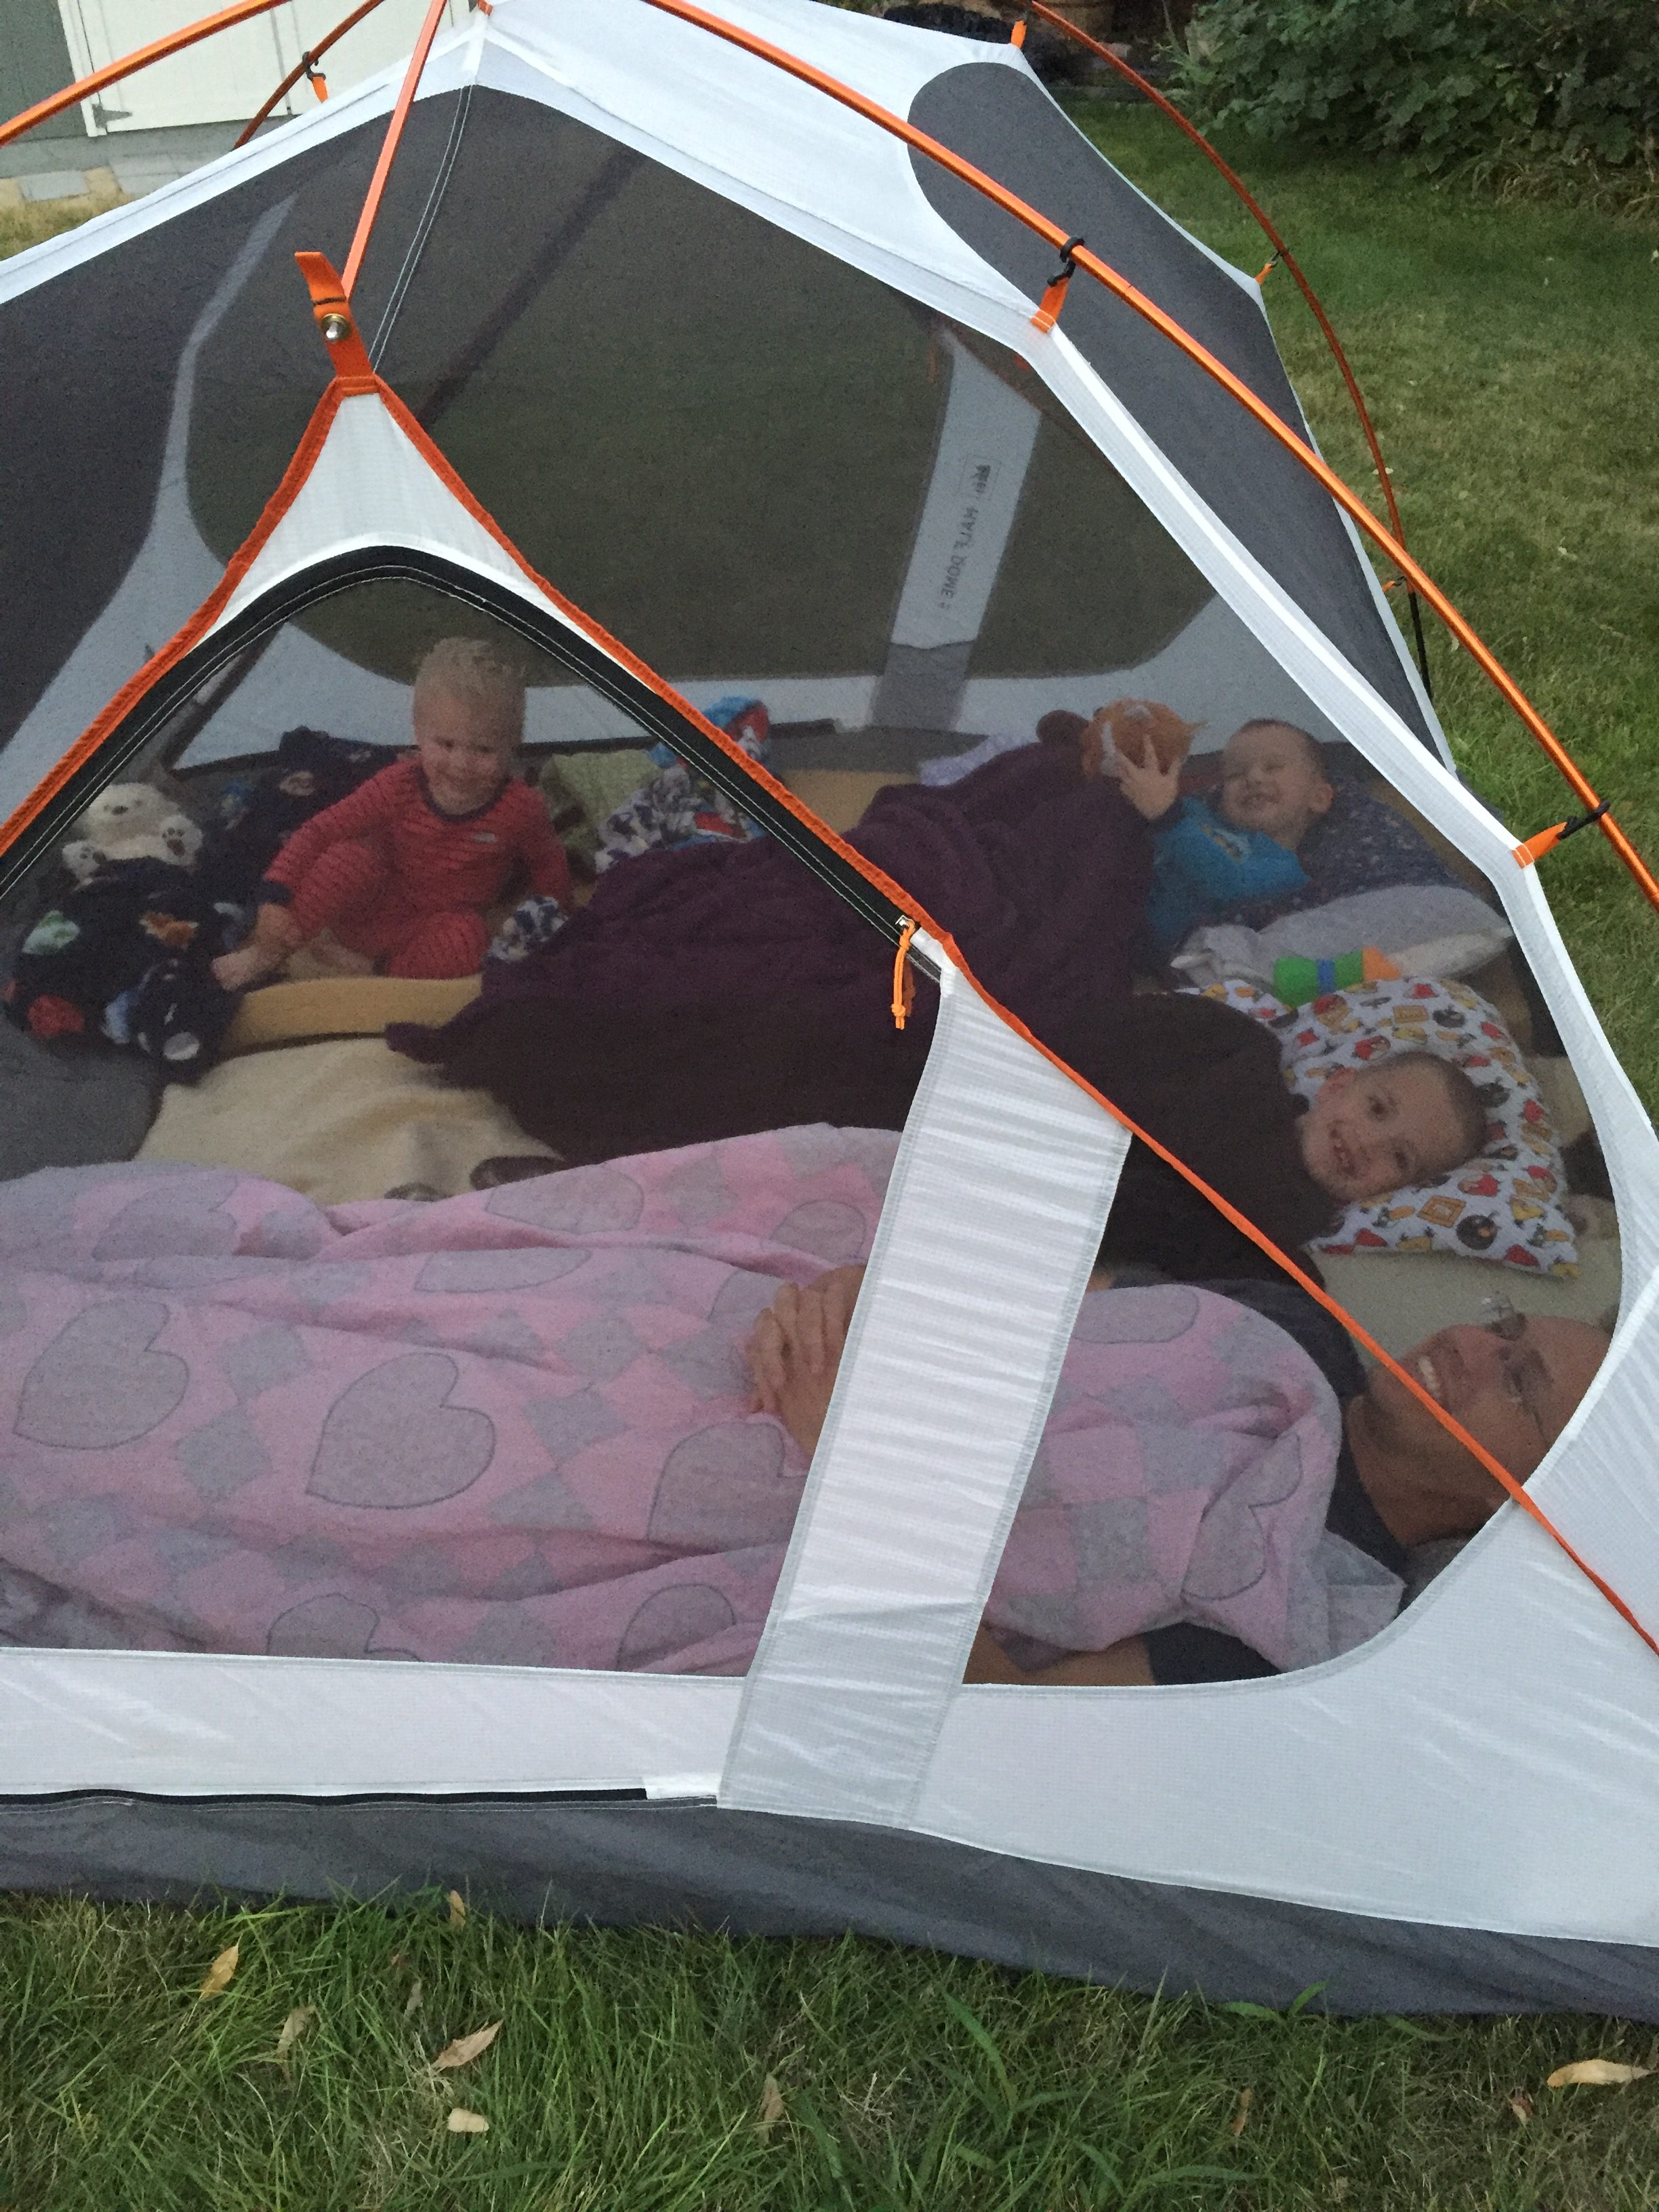 "Camping"